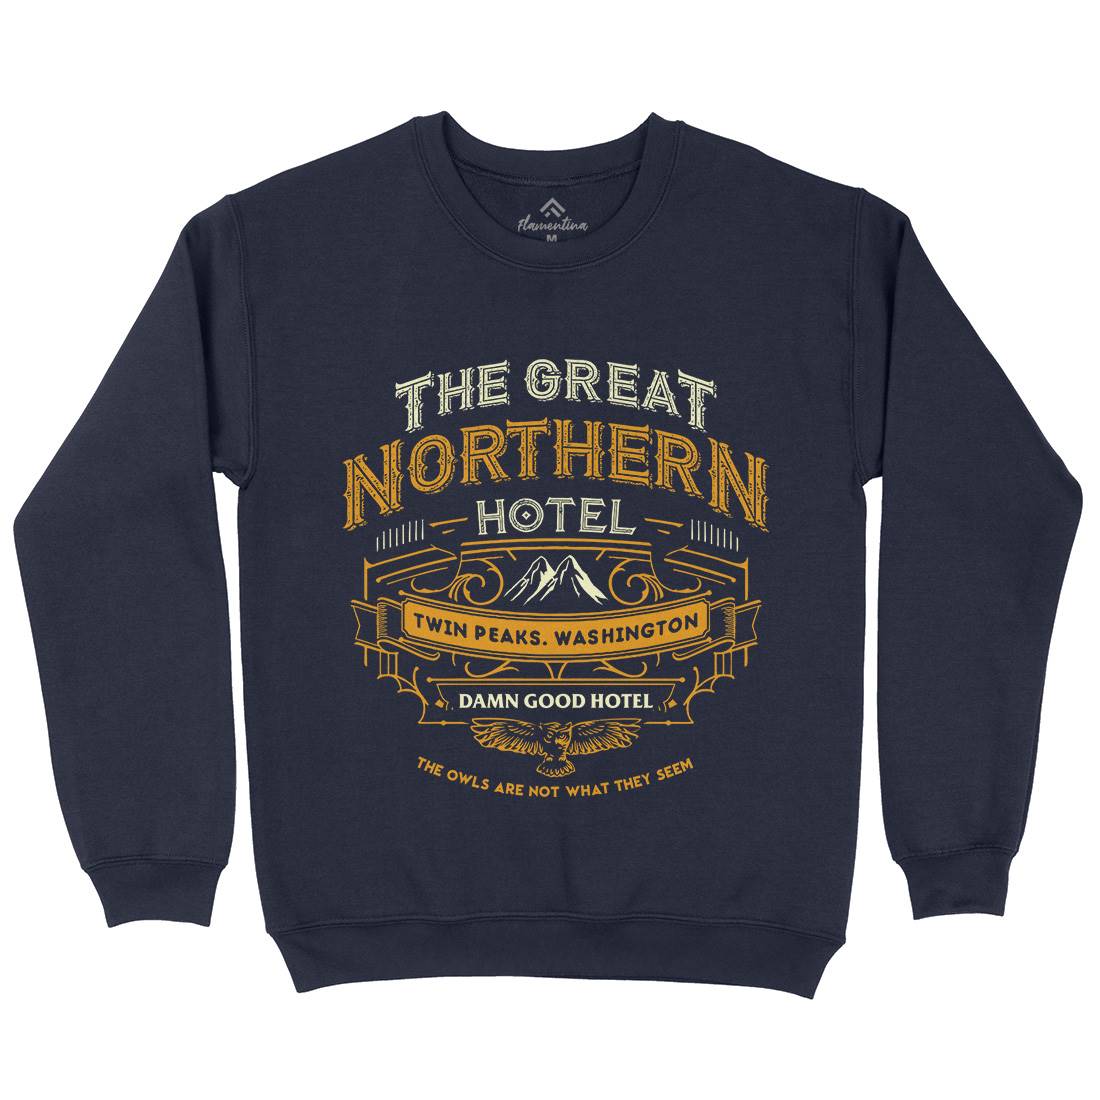 Great Northern Hotel Kids Crew Neck Sweatshirt Horror D185